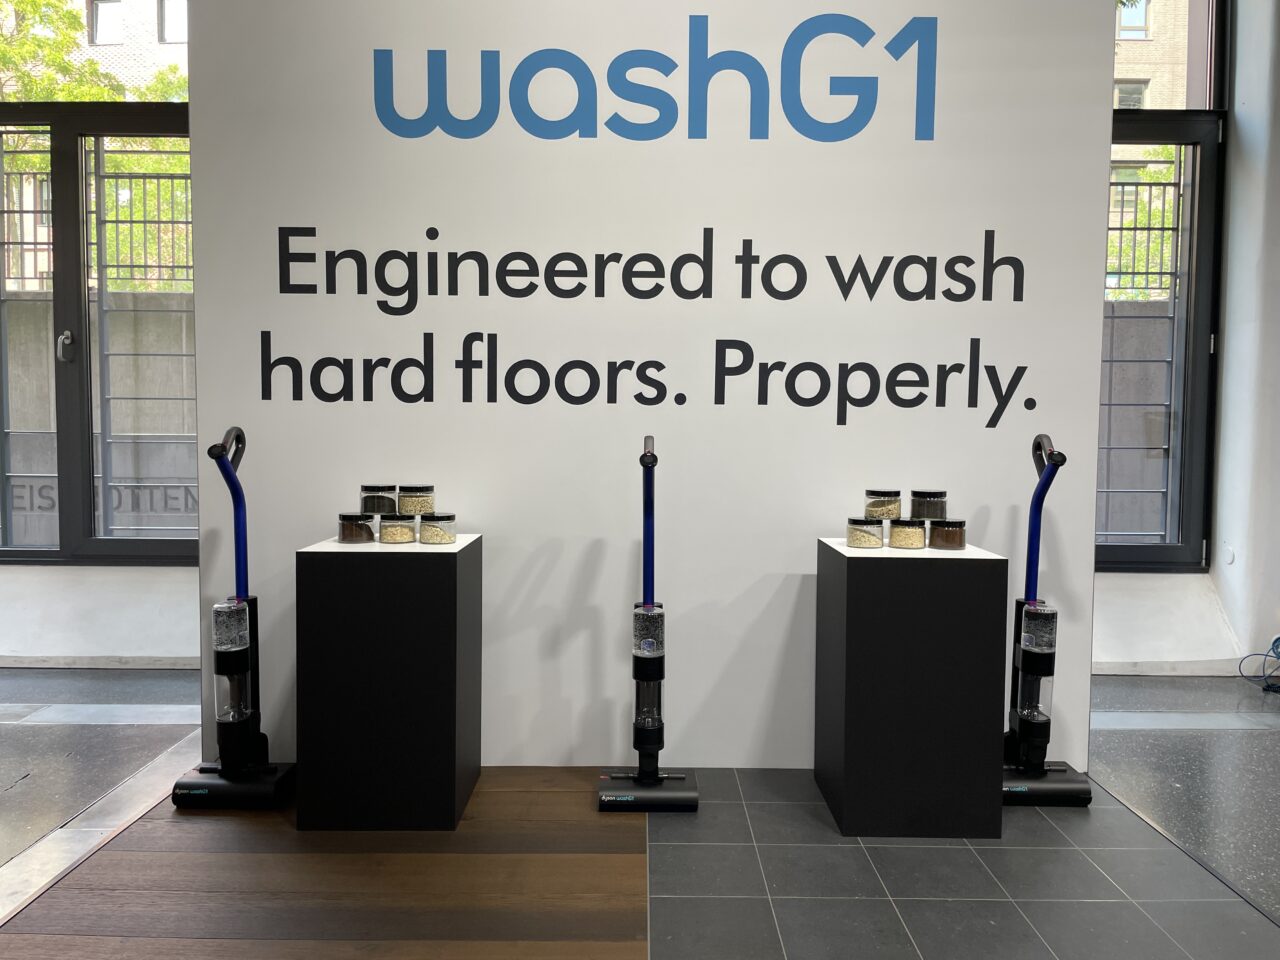 Wystawa odkurzaczy washG1 do mycia twardych podłóg, dwa urządzenia na podestach z próbkami.